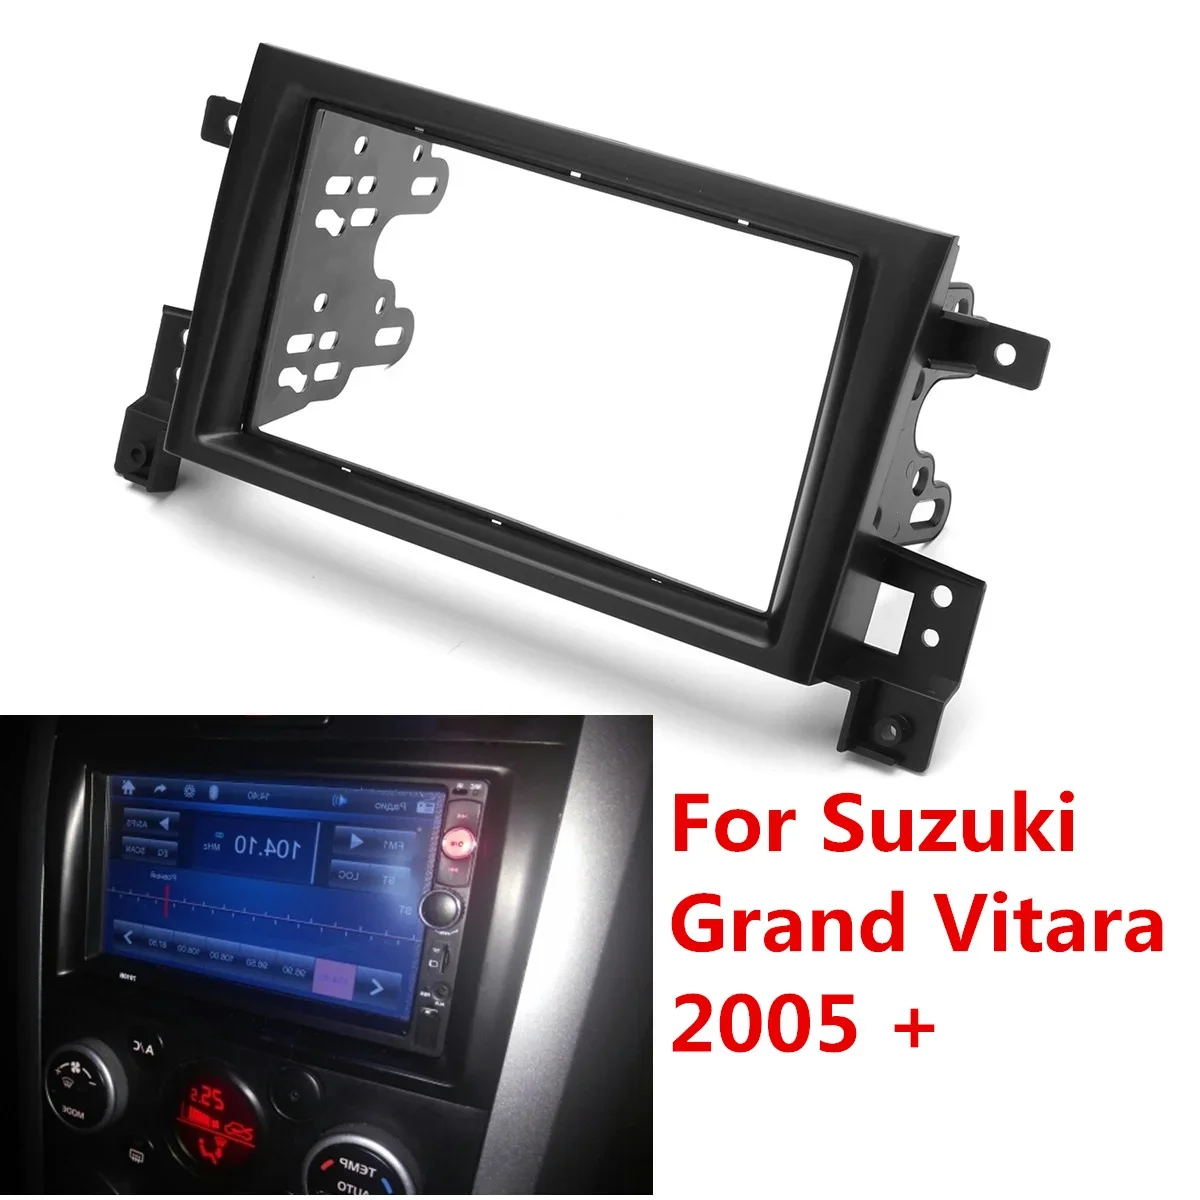 2 Din Araba İç Radyo Fasya Fascias Paneli Çerçeve CD DVD Dash Ses Kapak Suzuki Grand Vitara İçin 2005 2006 2007 2008 - 2018